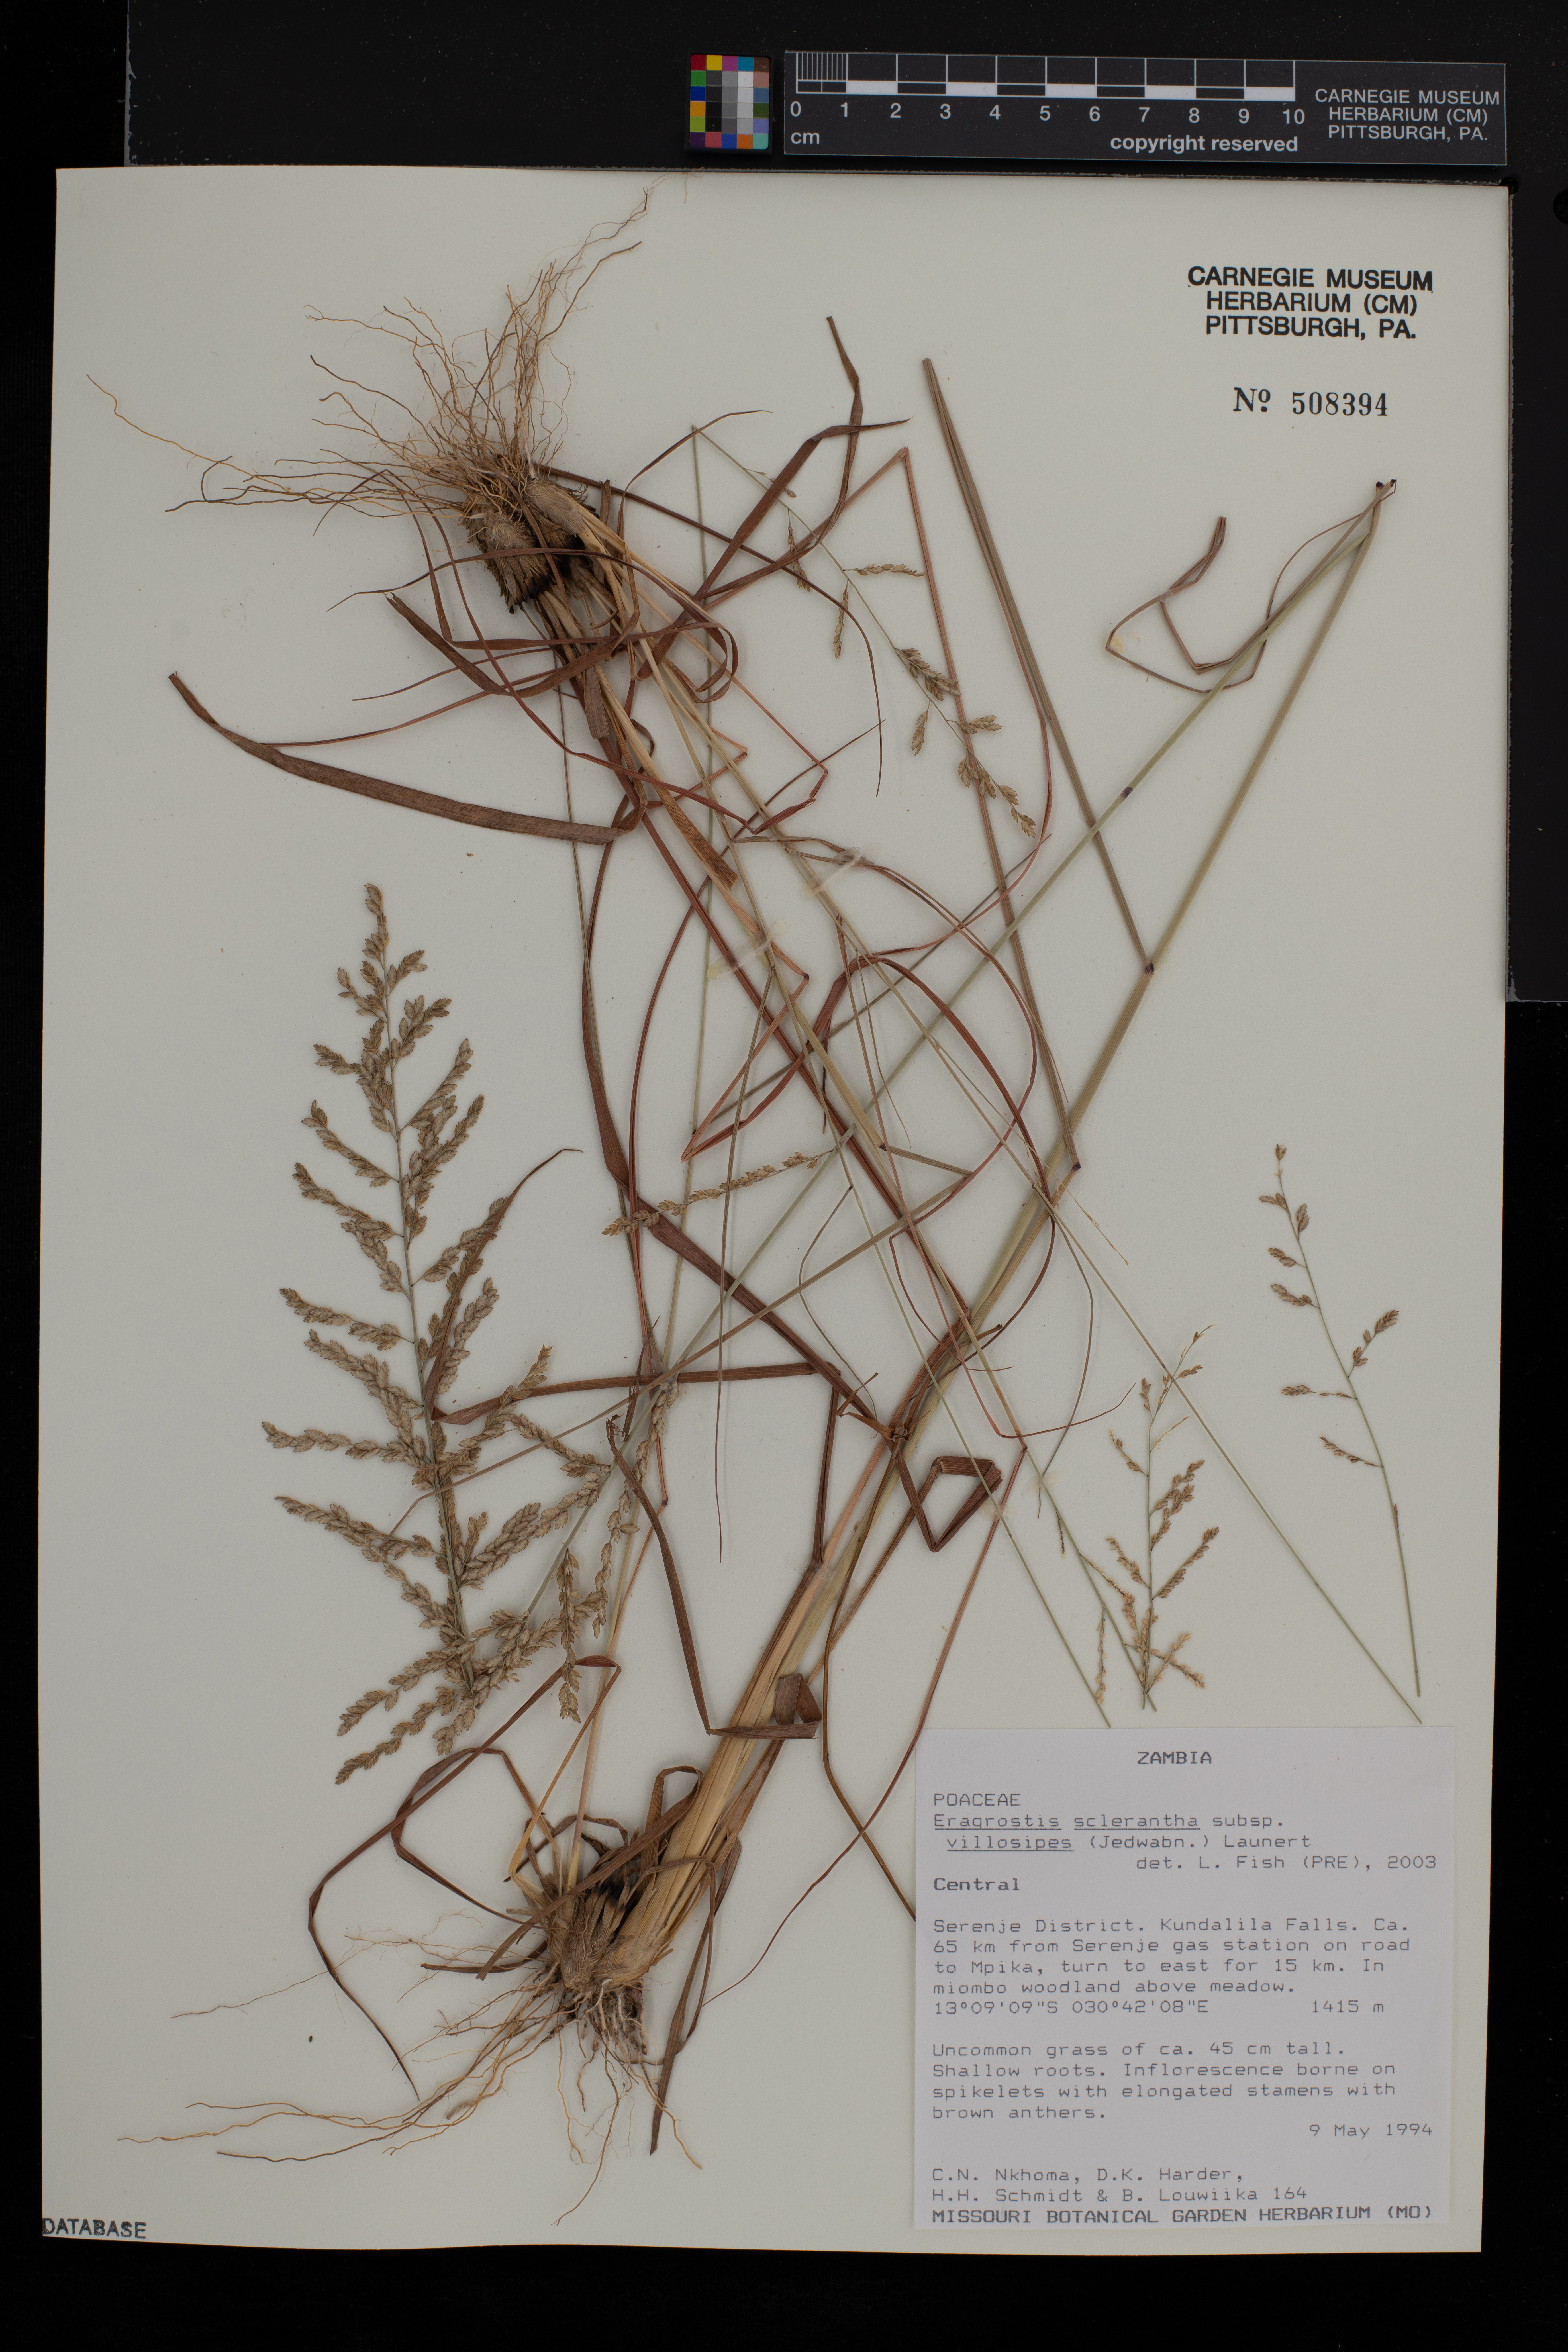 Eragrostis sclerantha subsp. villosipes image